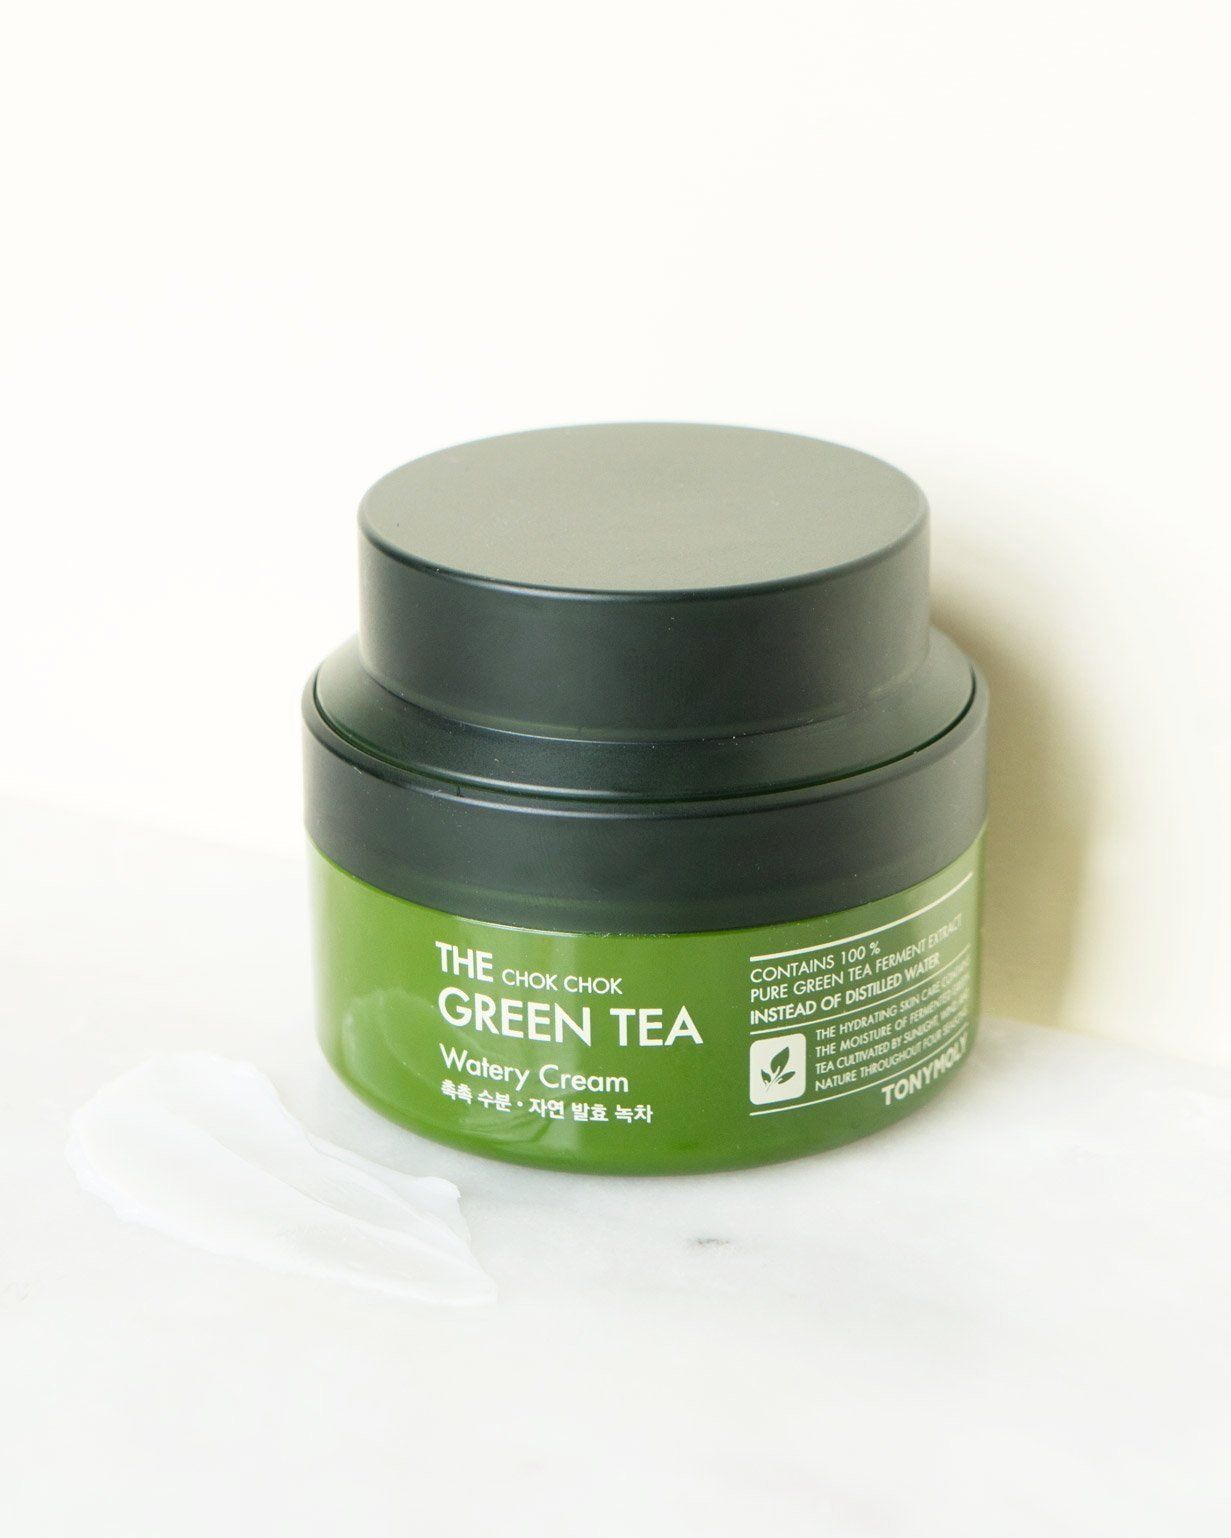 Tony Moly Chok Chok Green Tea Watery Cream